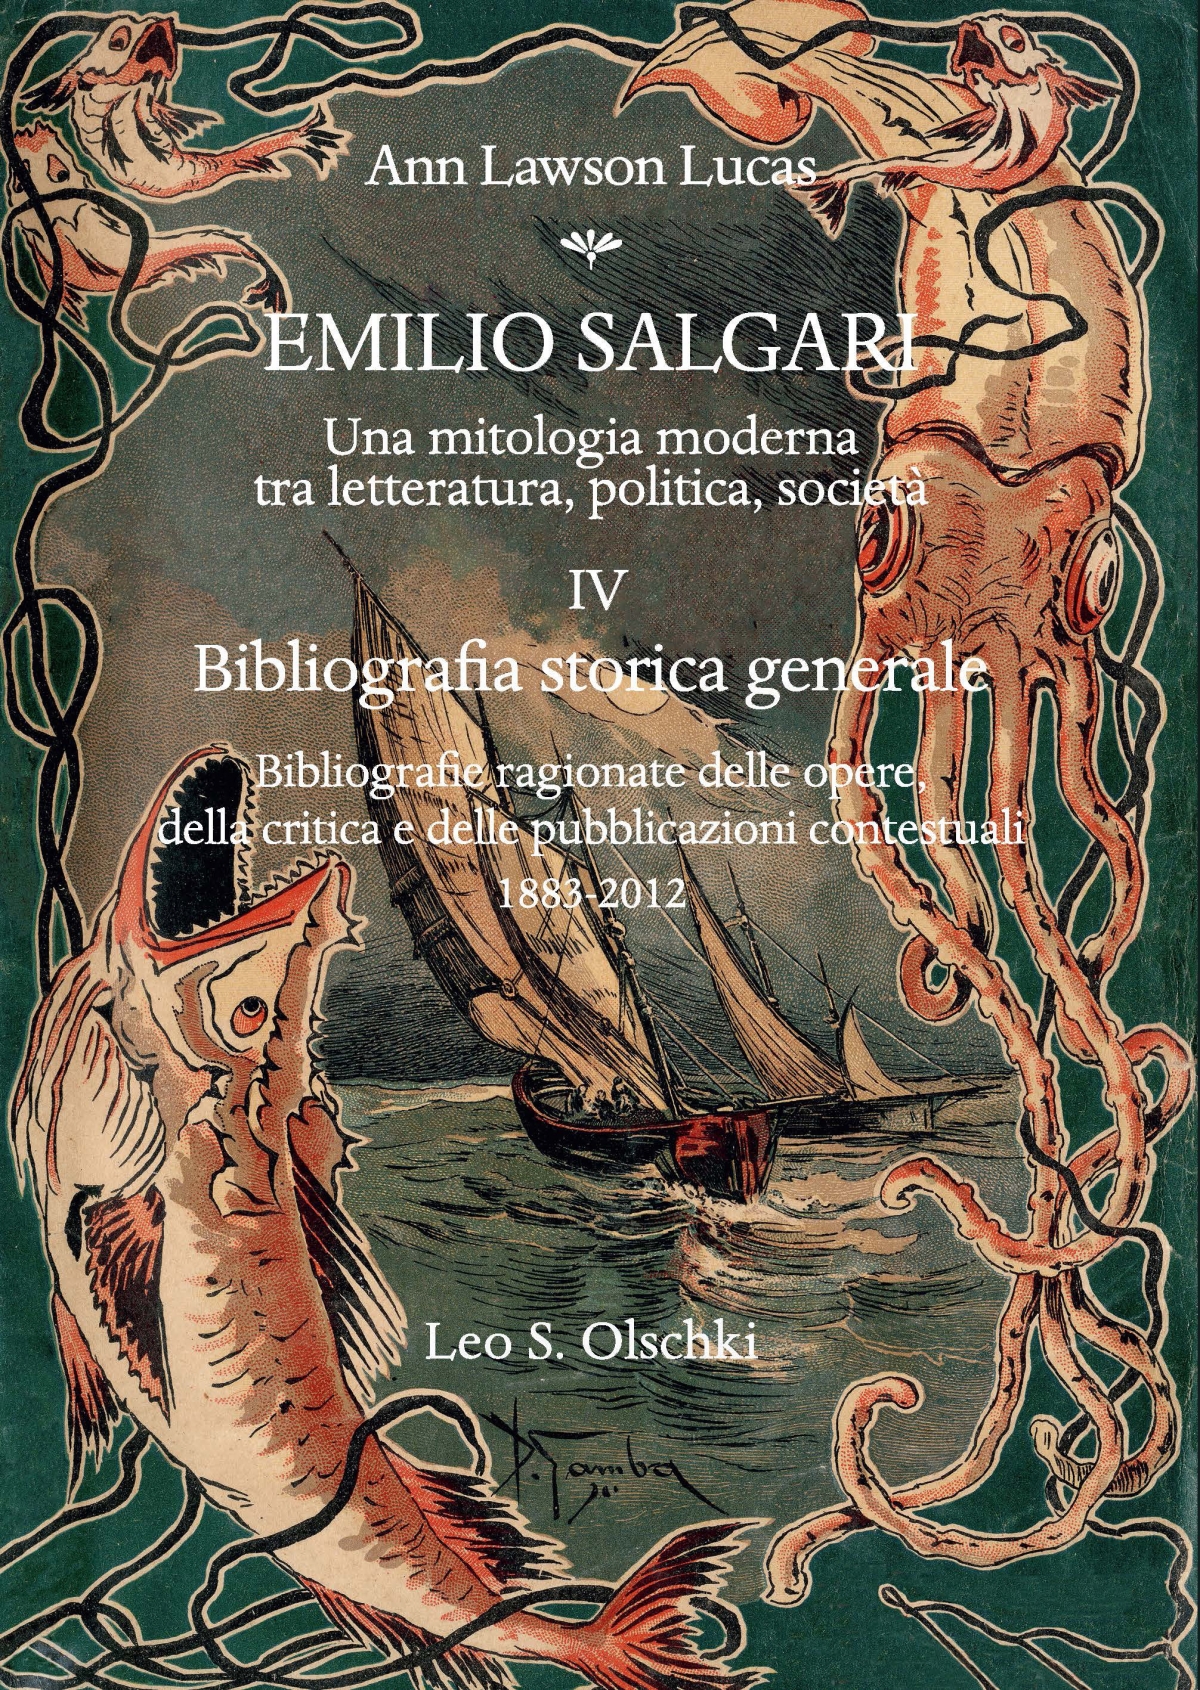 Emilio Salgari. Una mitologia moderna, tra letteratura, politica e società.